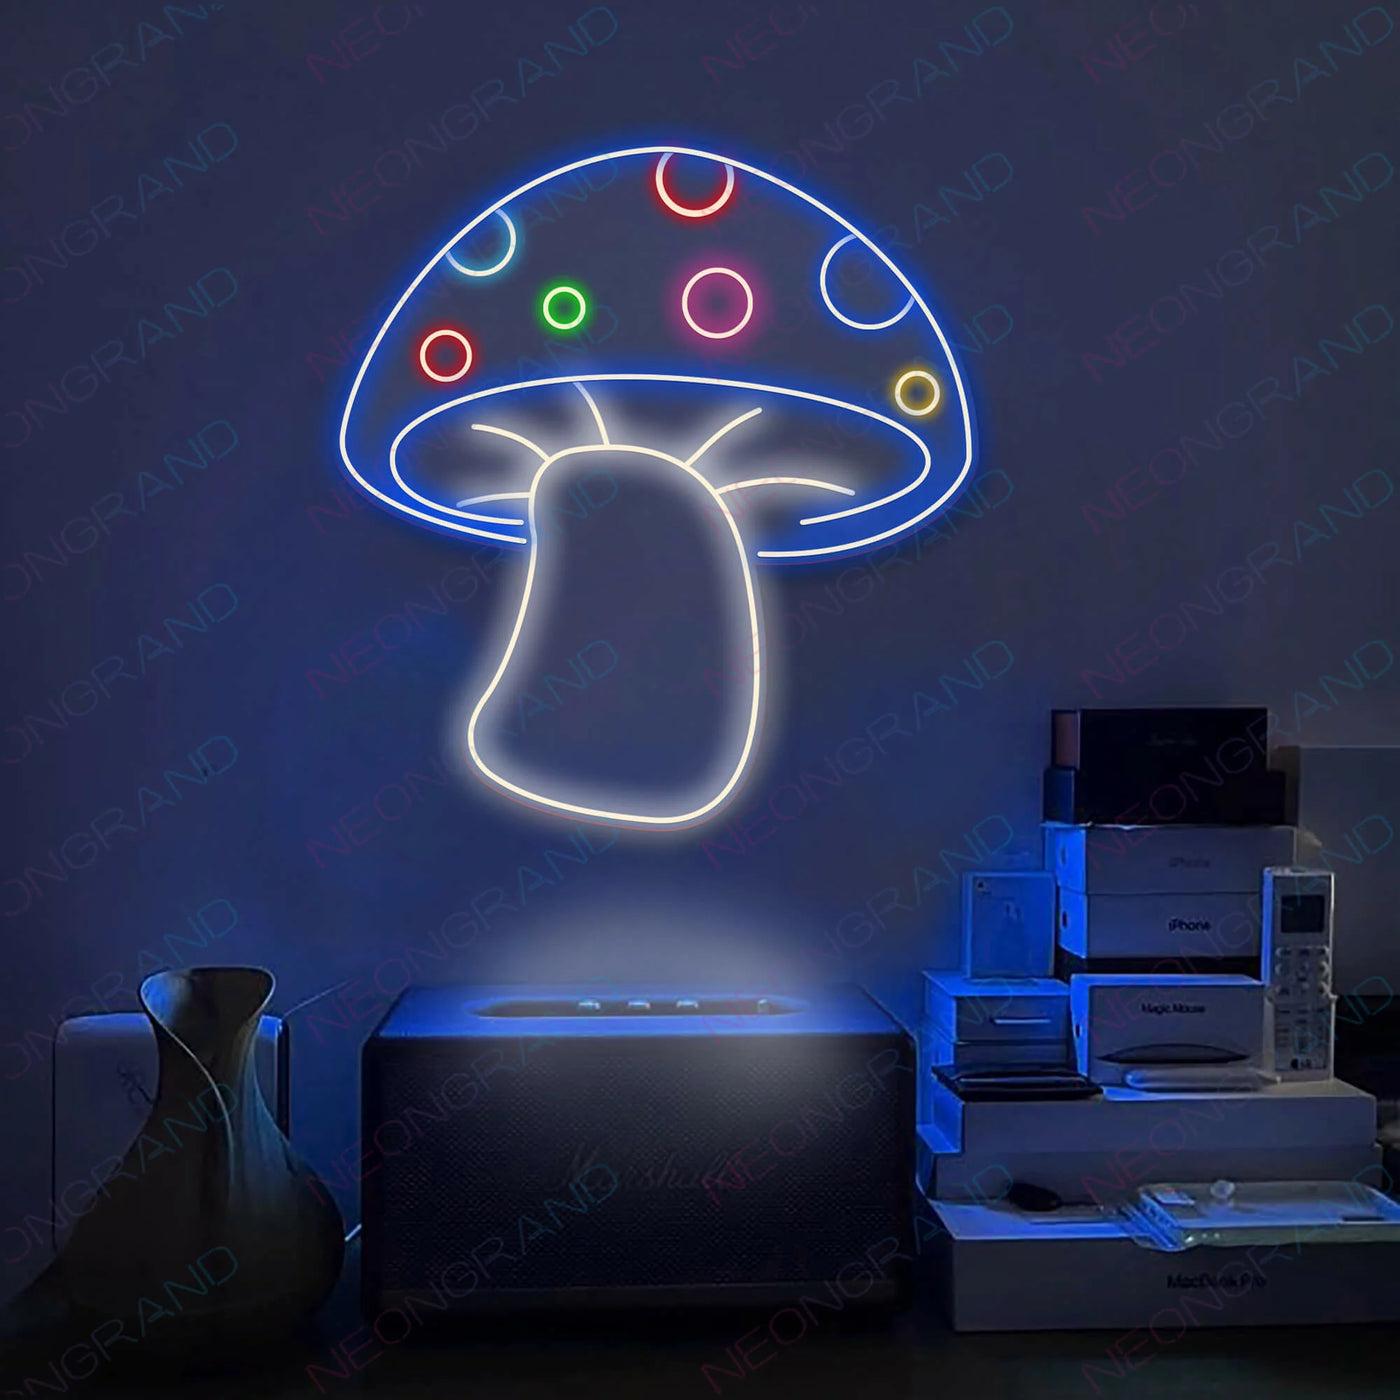 Aesthetic Mushroom Neon Sign Led Light Blue